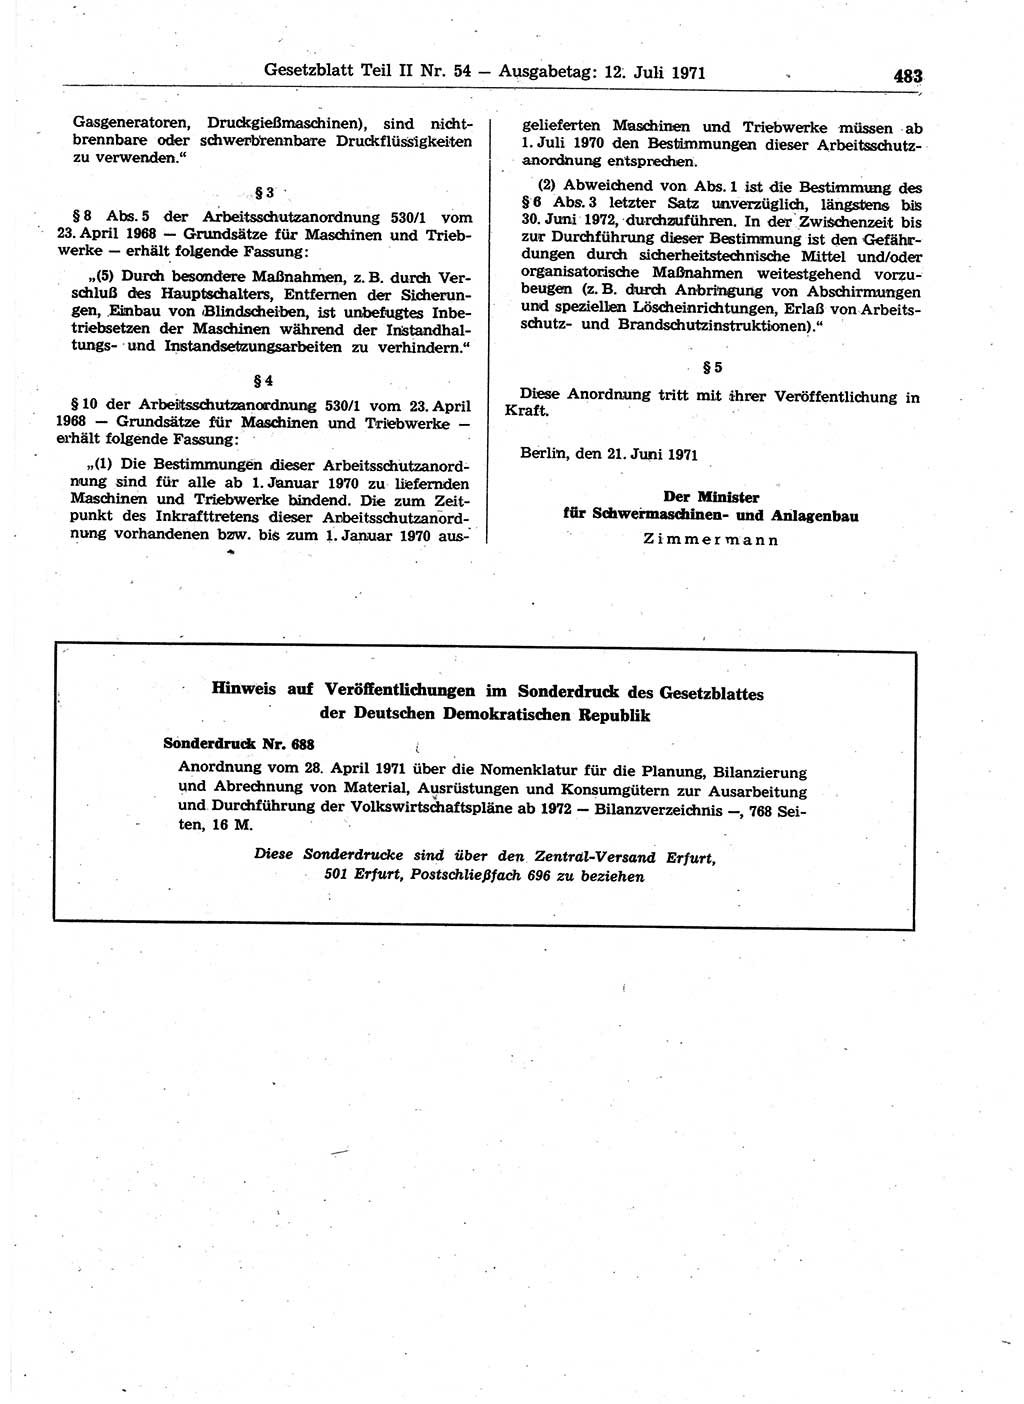 Gesetzblatt (GBl.) der Deutschen Demokratischen Republik (DDR) Teil ⅠⅠ 1971, Seite 483 (GBl. DDR ⅠⅠ 1971, S. 483)